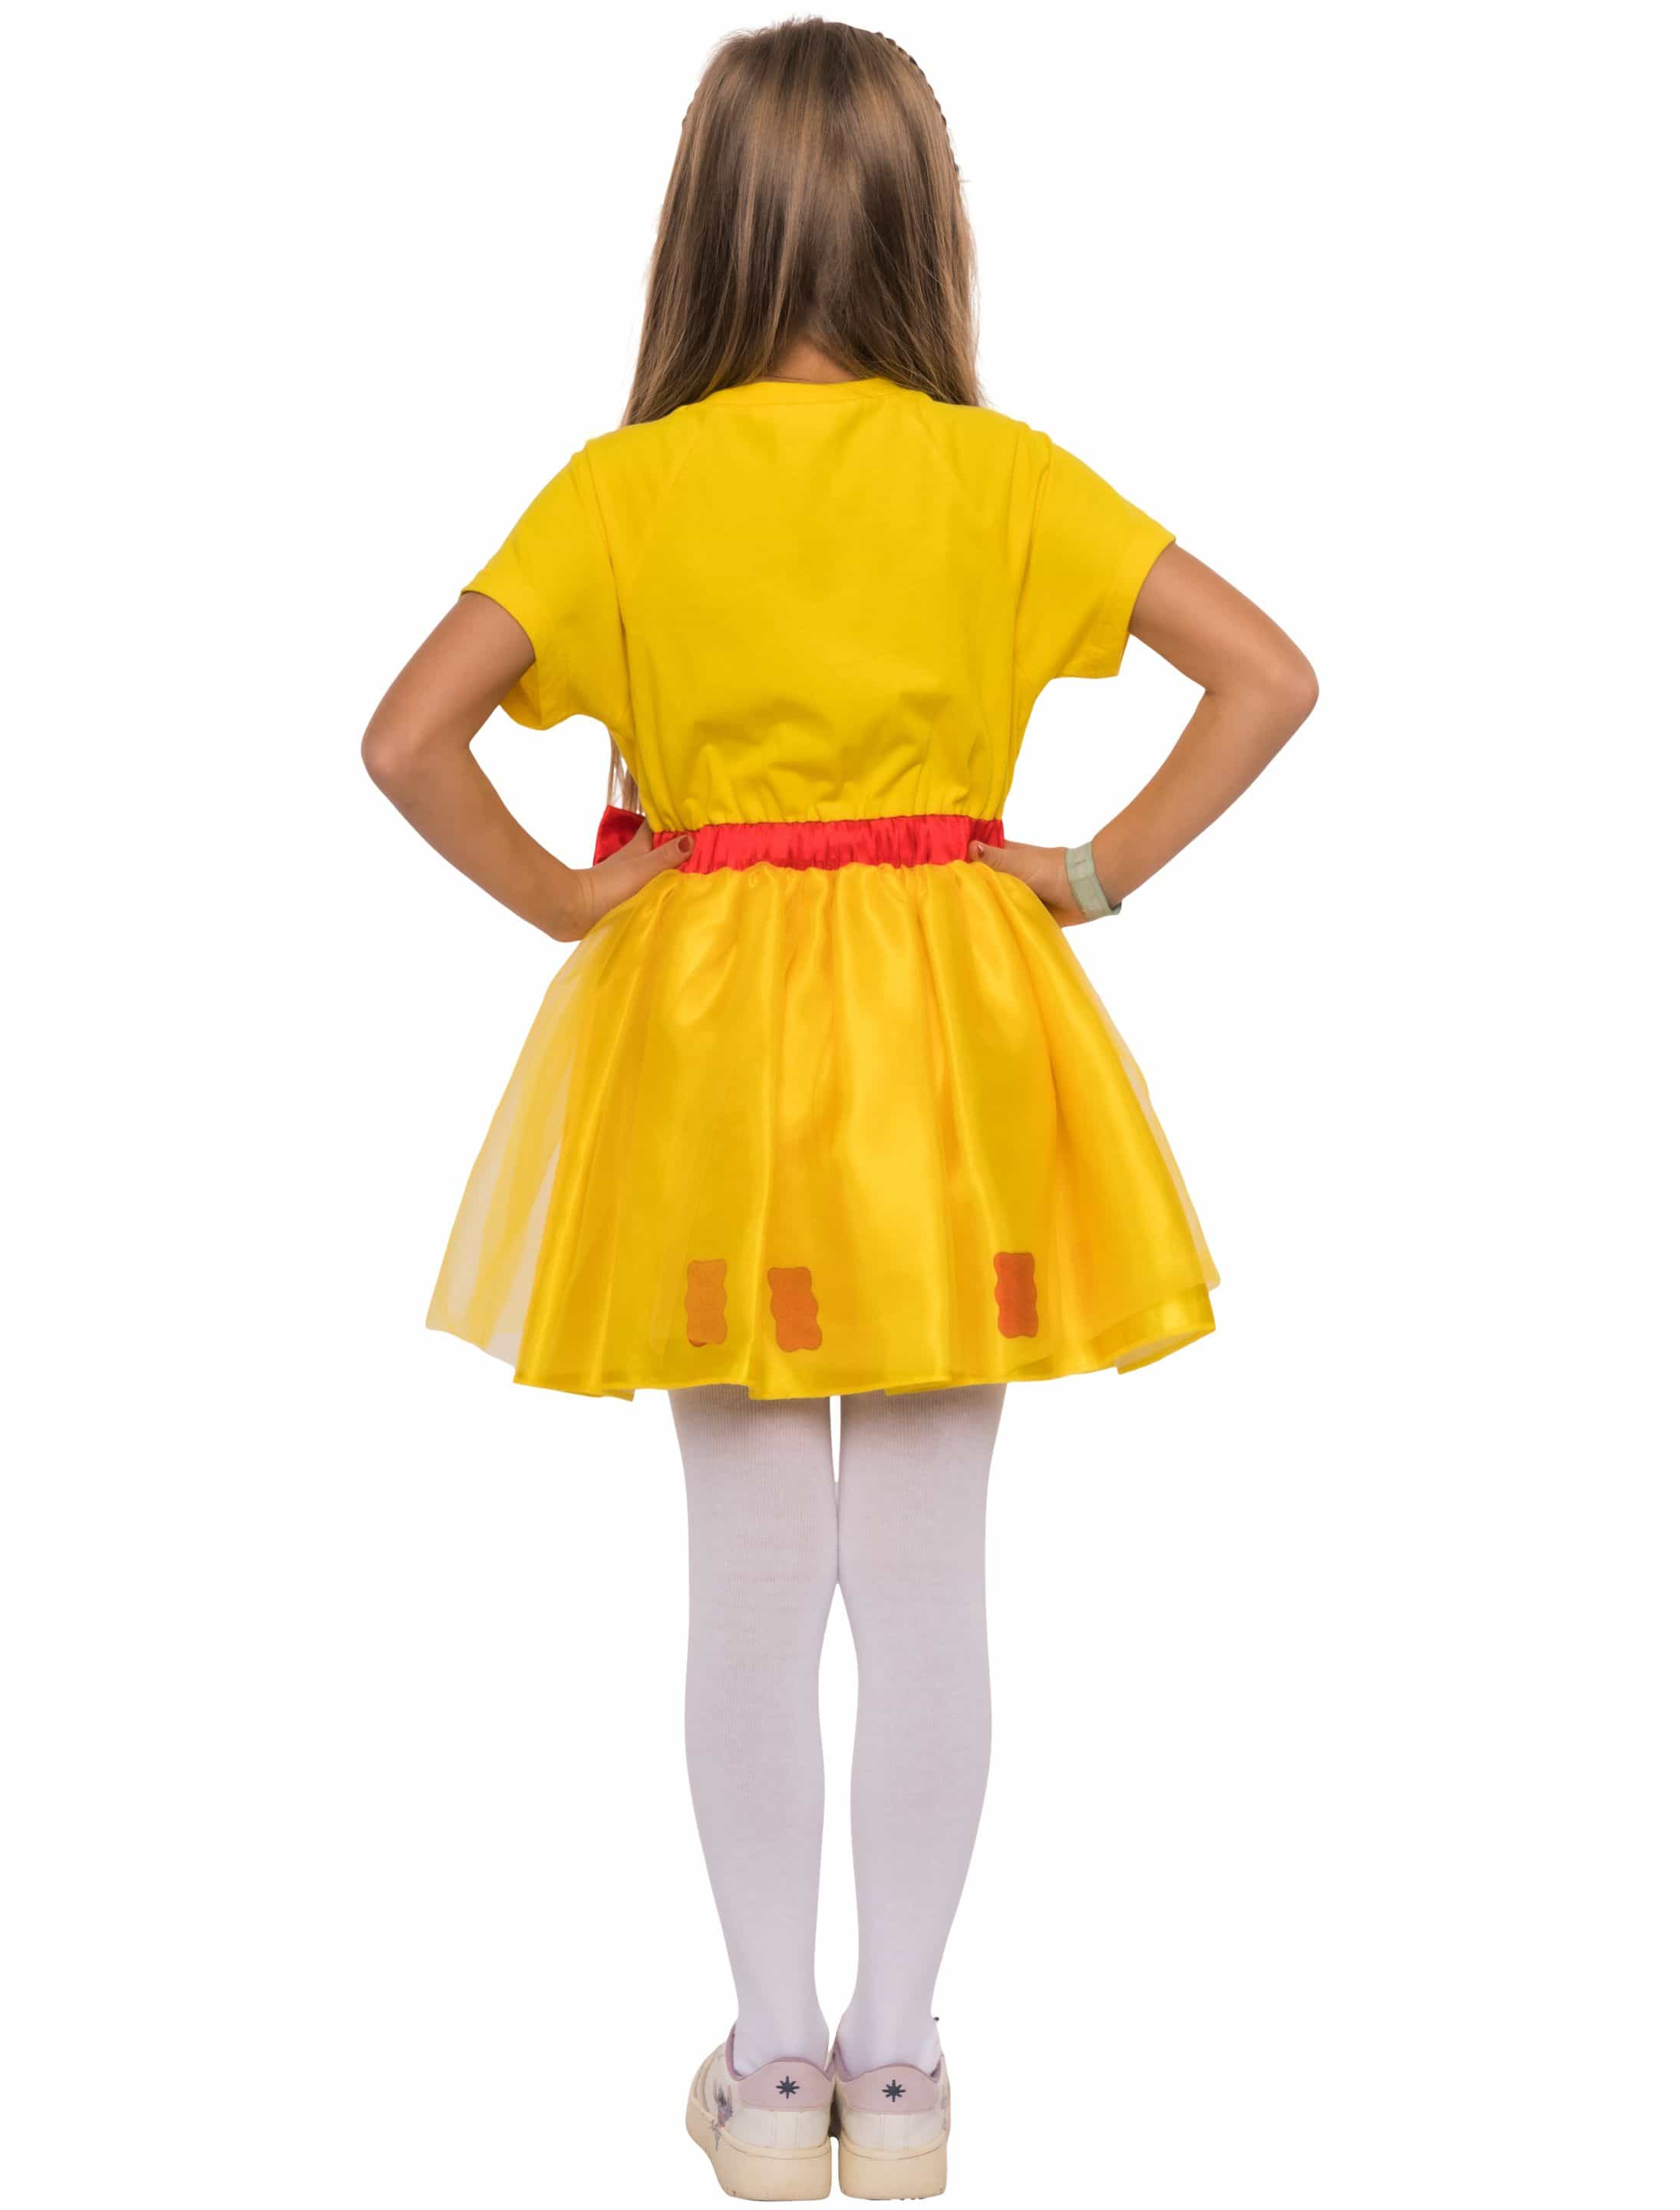 Kleid HARIBO Goldbären mit Schleife Kinder gelb 134/140